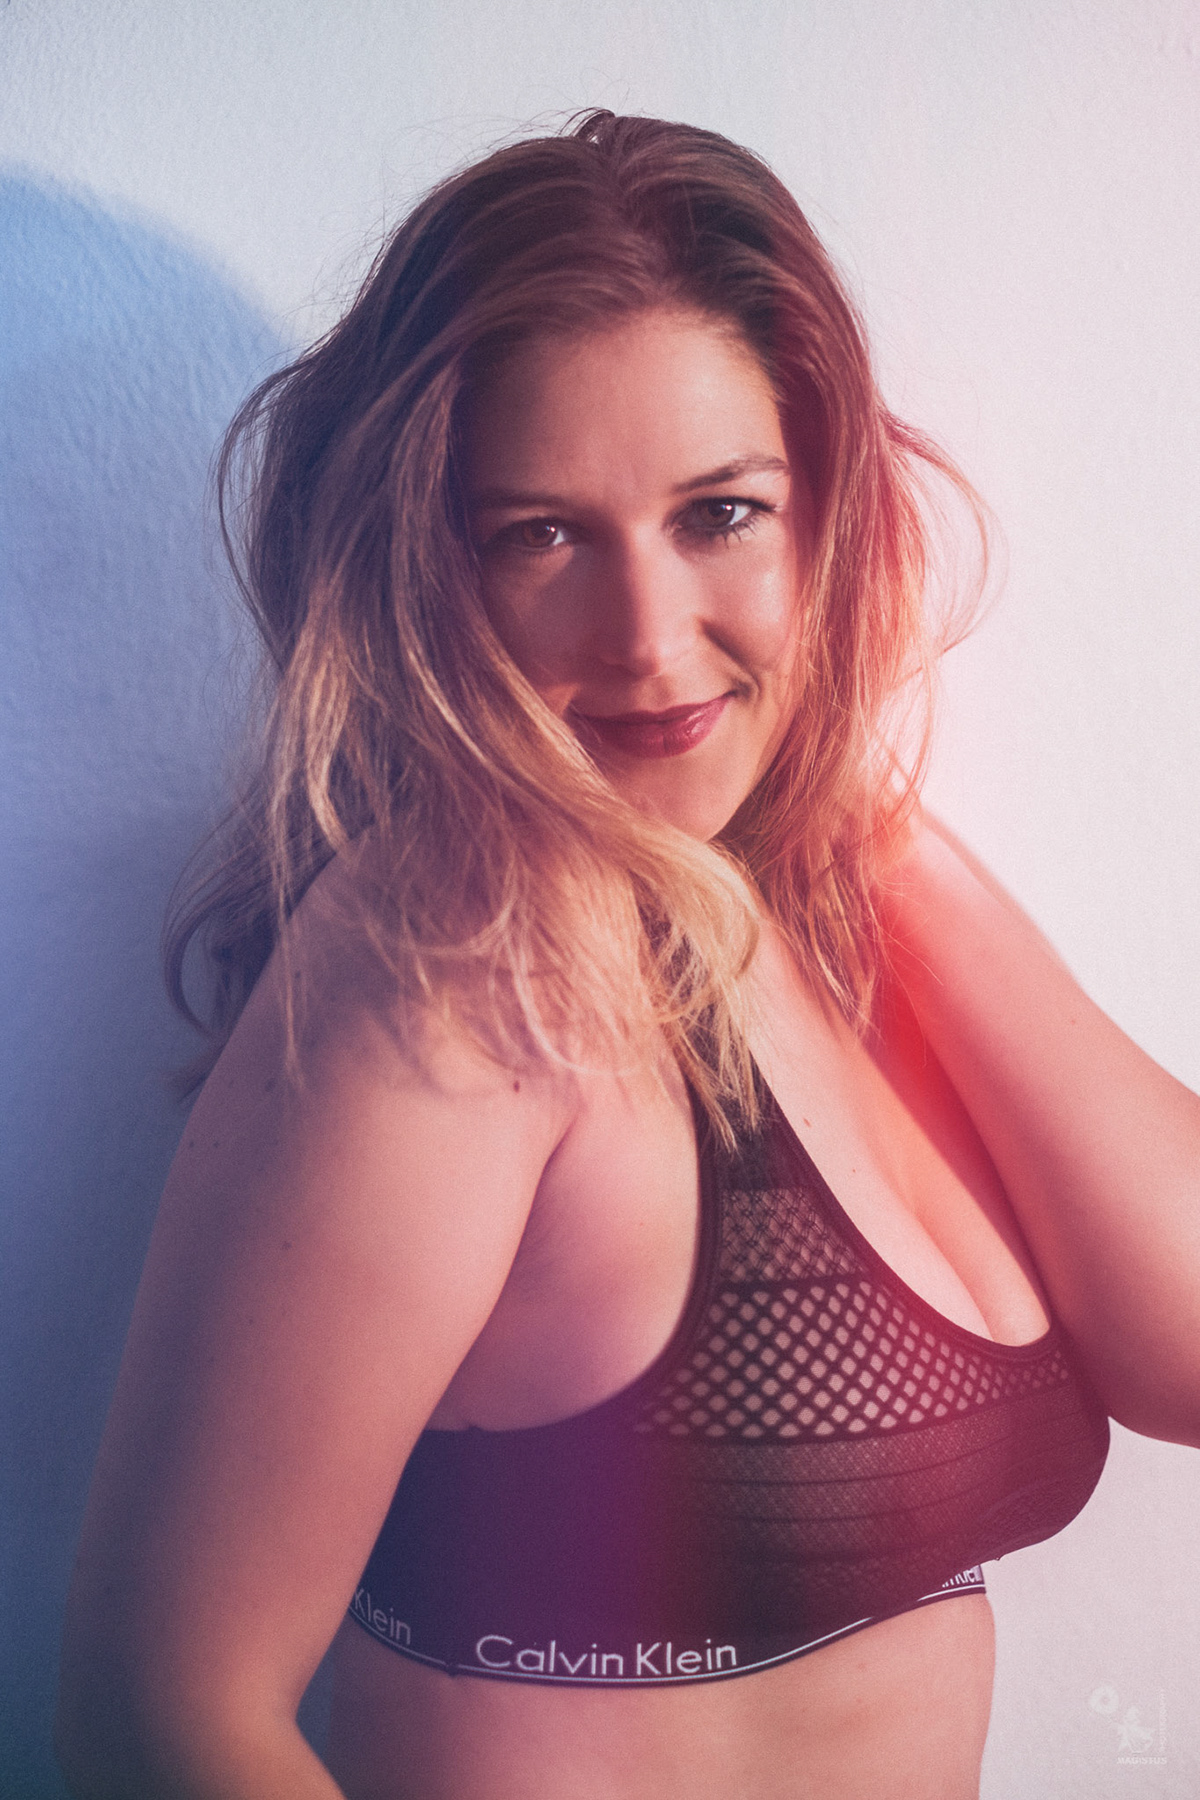 erotic sexy cleavage boobs seethrough underwear portrait photoshoot magistus Darmstadt